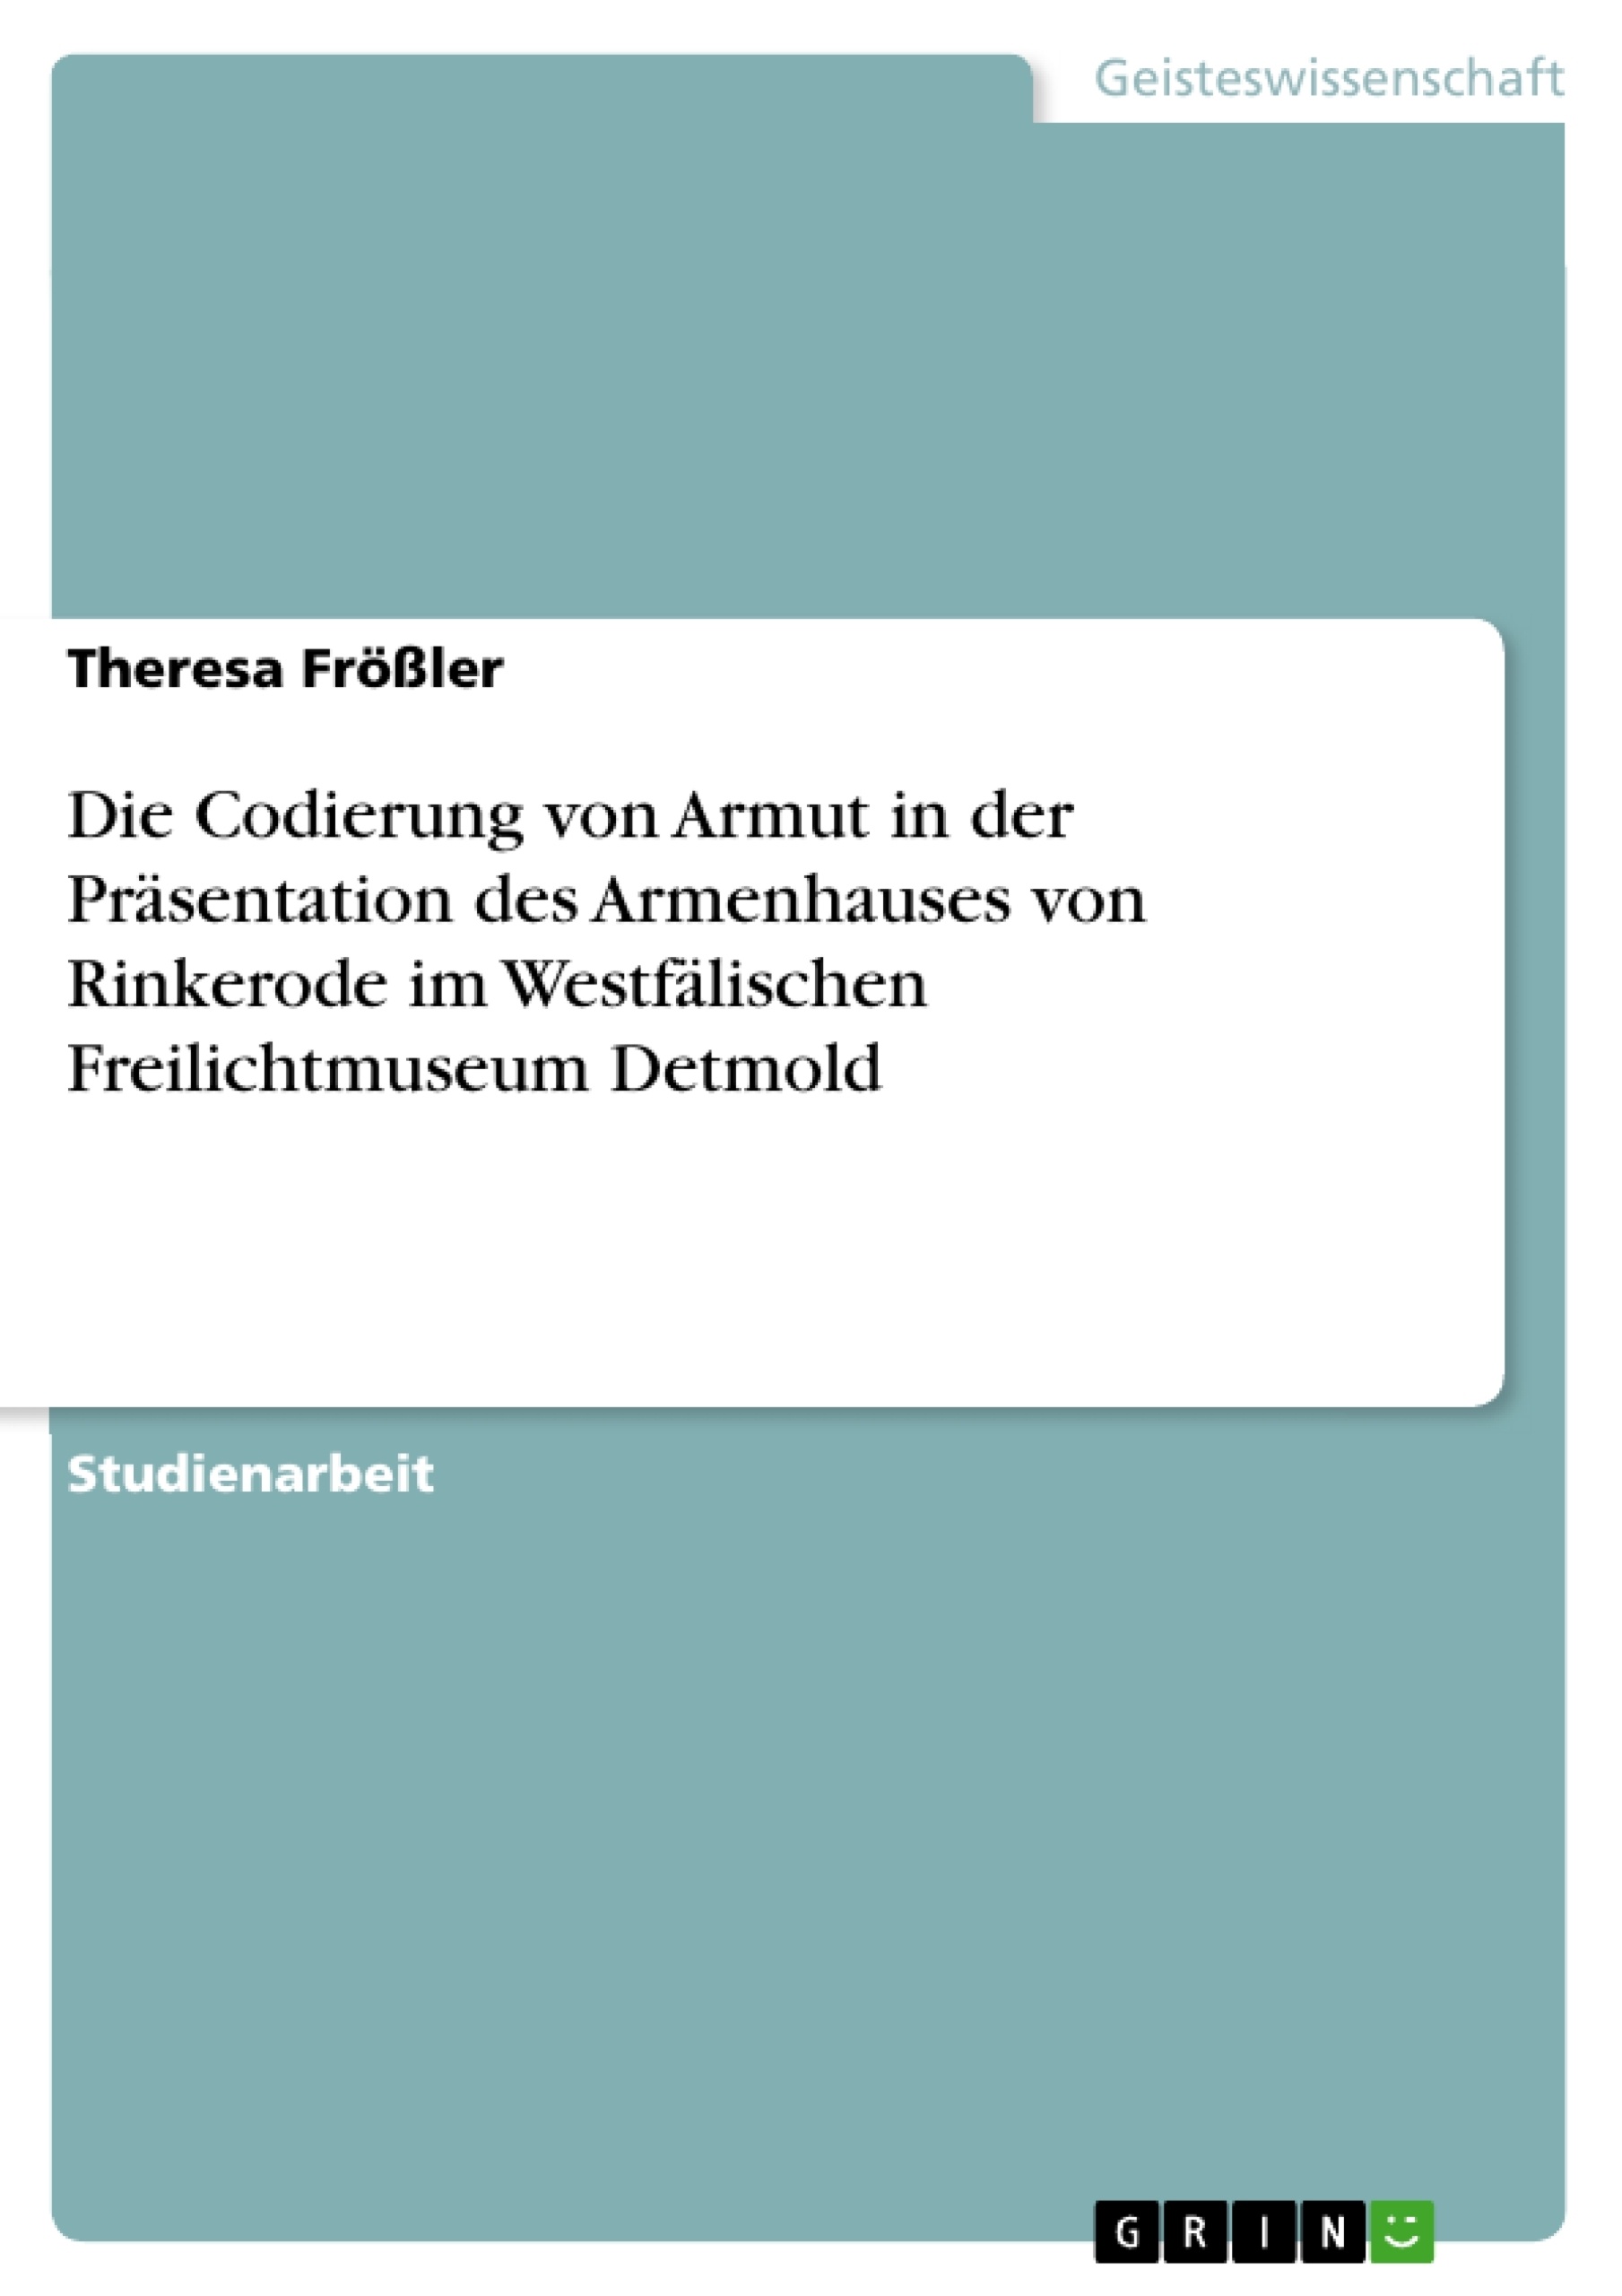 Titre: Die Codierung von Armut in der Präsentation des Armenhauses von Rinkerode im Westfälischen Freilichtmuseum Detmold